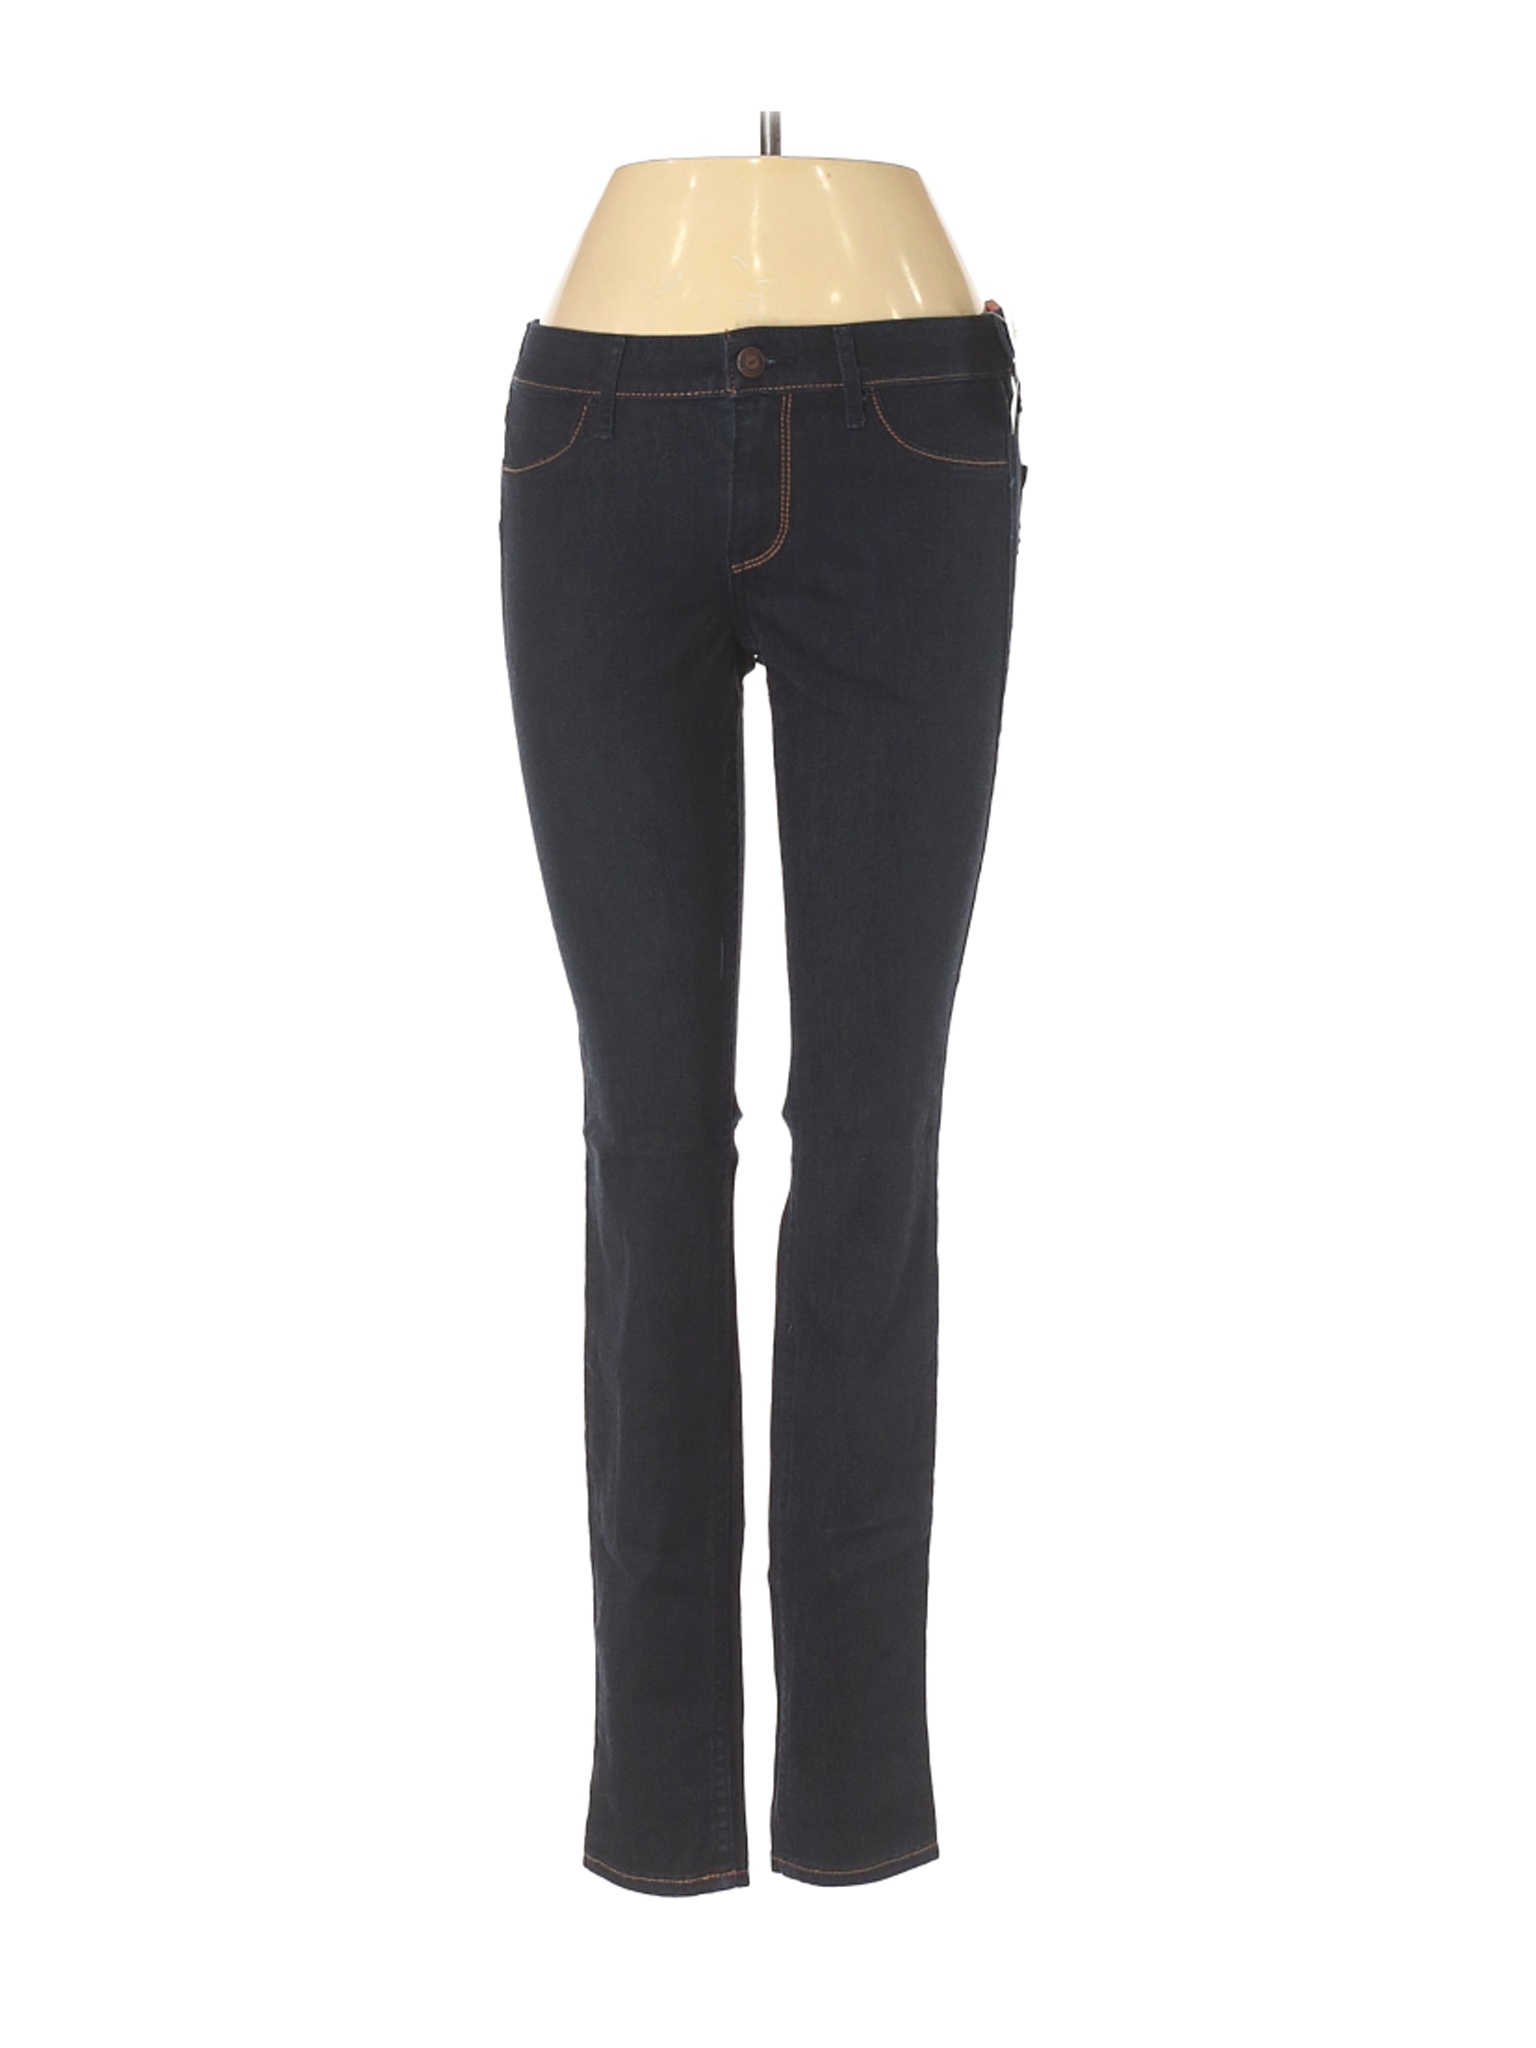 NWT Hollister Women Black Jeans 26W | eBay